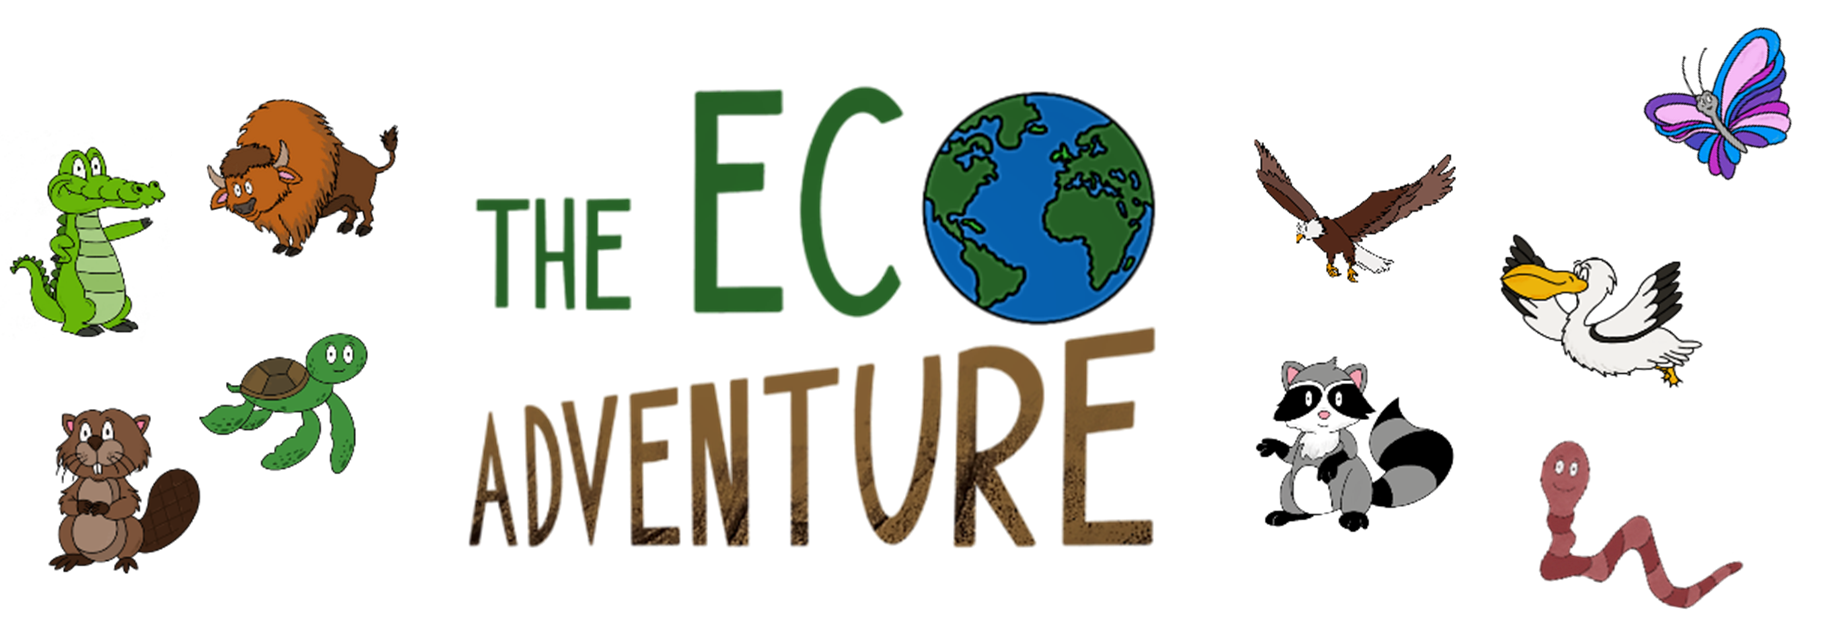 [EN] The Eco Adventure Demo